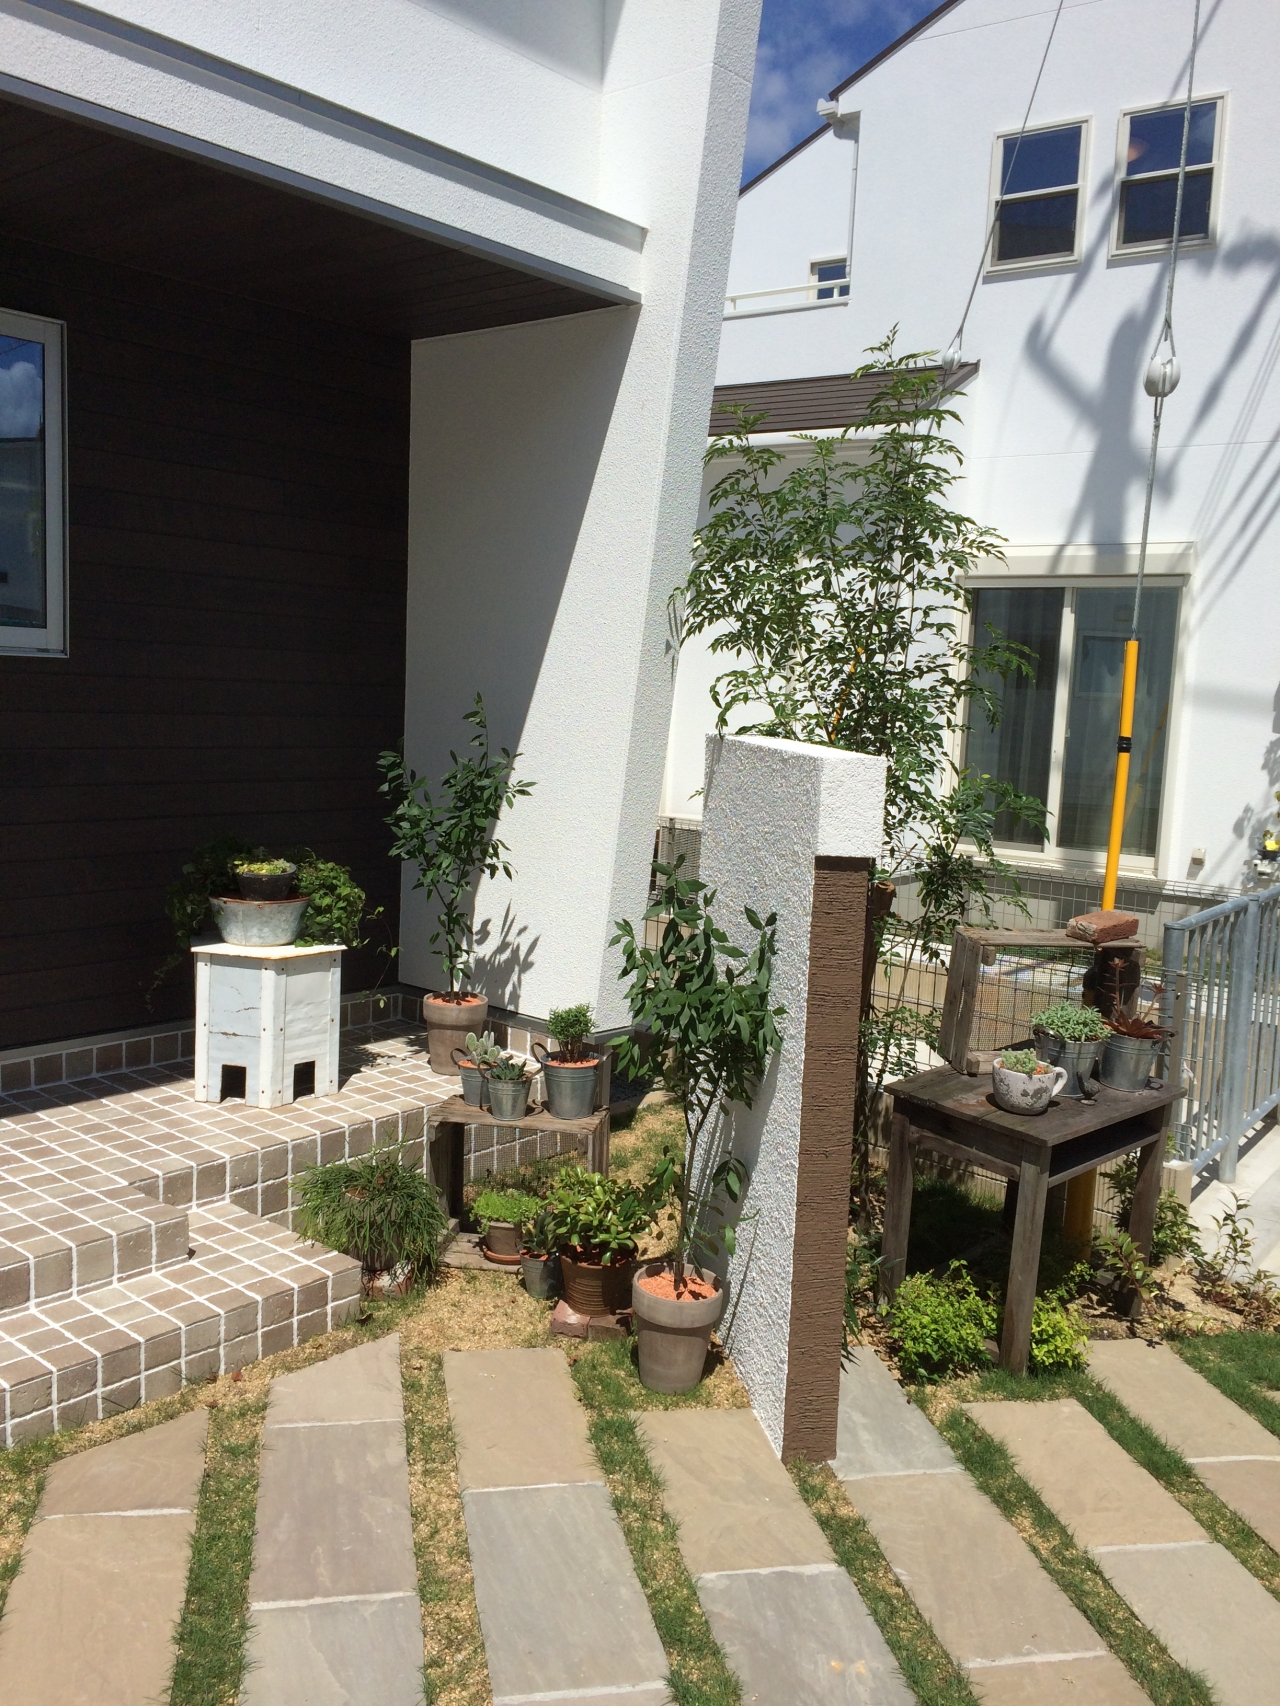 雑貨屋さんのような可愛いお庭です 最新情報 姫路市 加古川市で外構工事 エクステリア工事をご検討の方は姫路の外構専門店 Bagus バグース にご相談ください